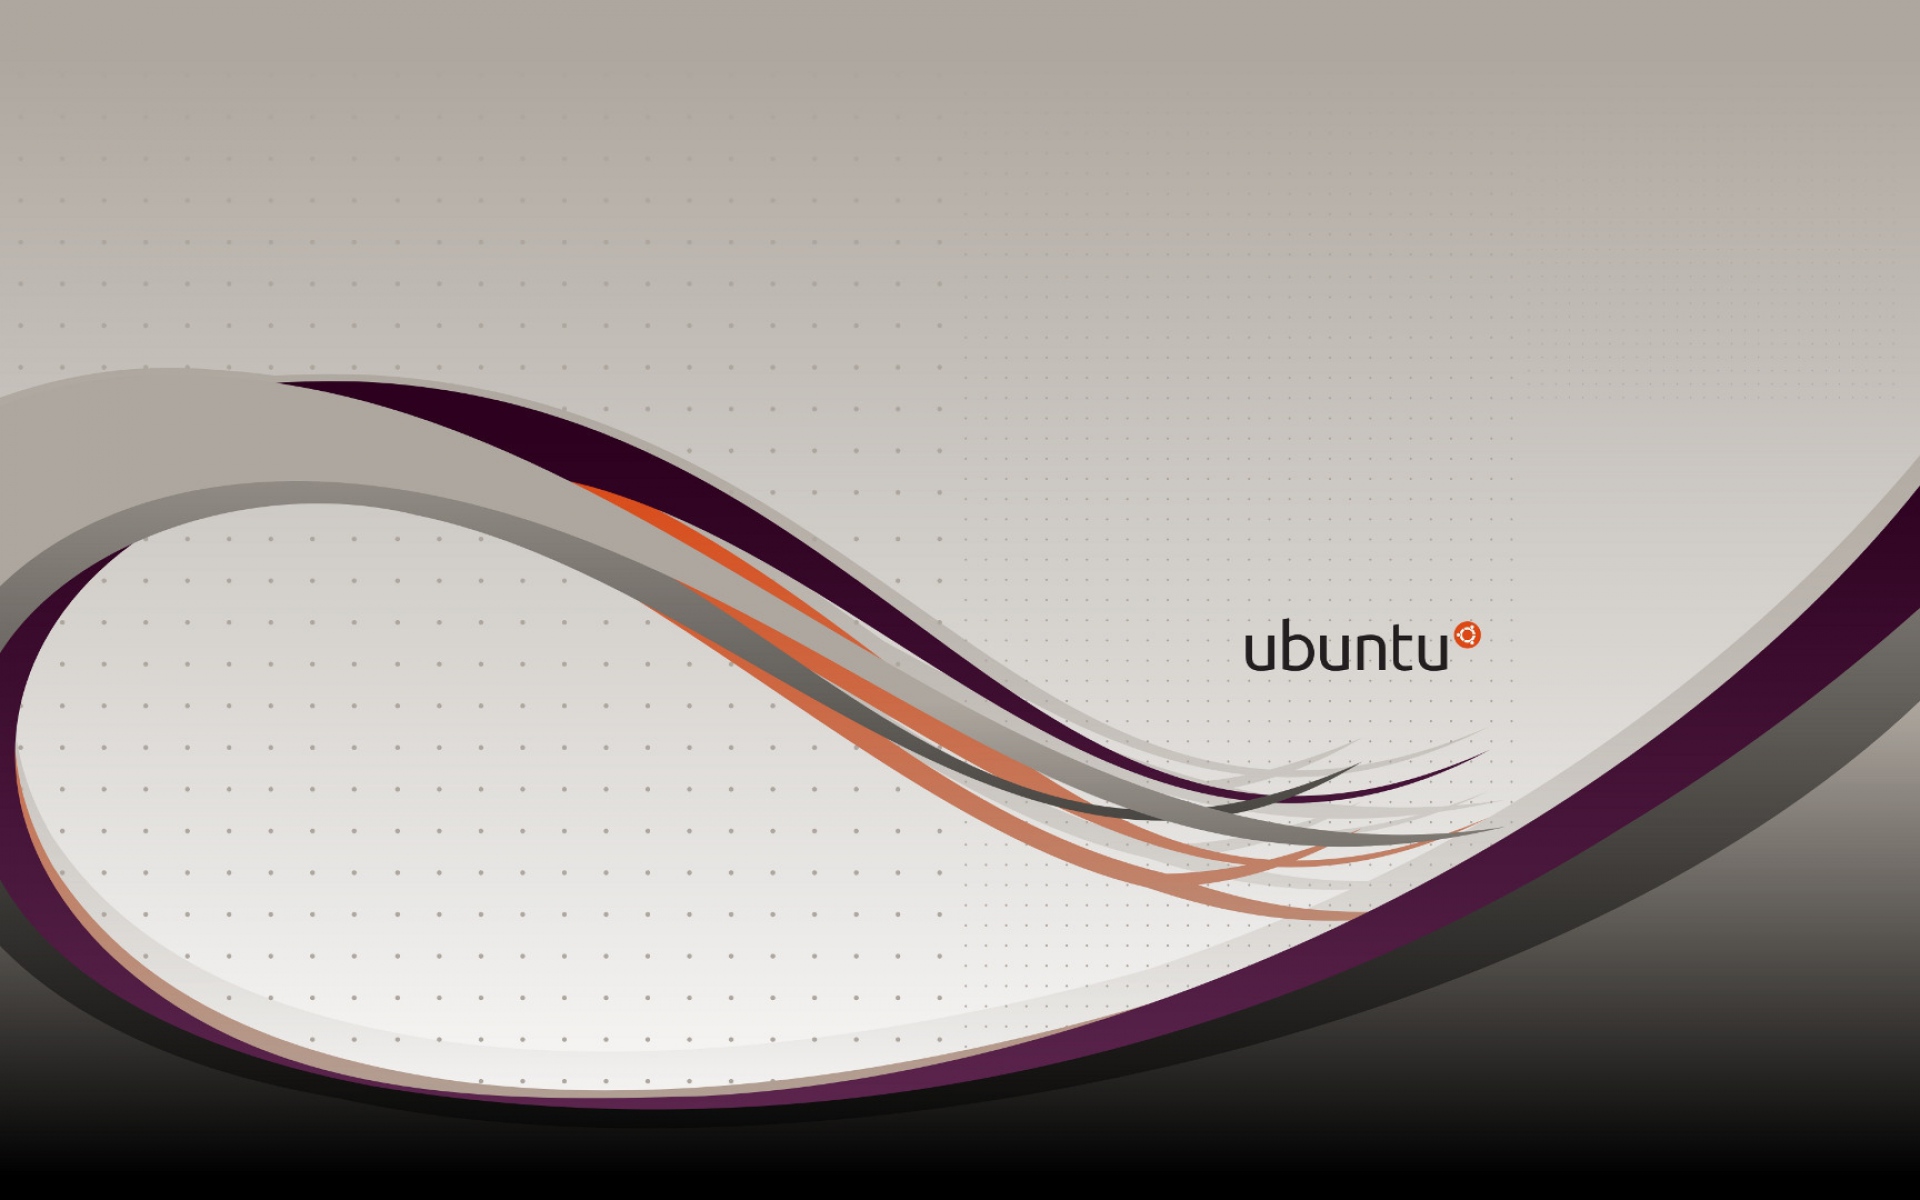 Картинки Ubuntu, os, lines, abstract, orange, grey фото и обои на рабочий стол